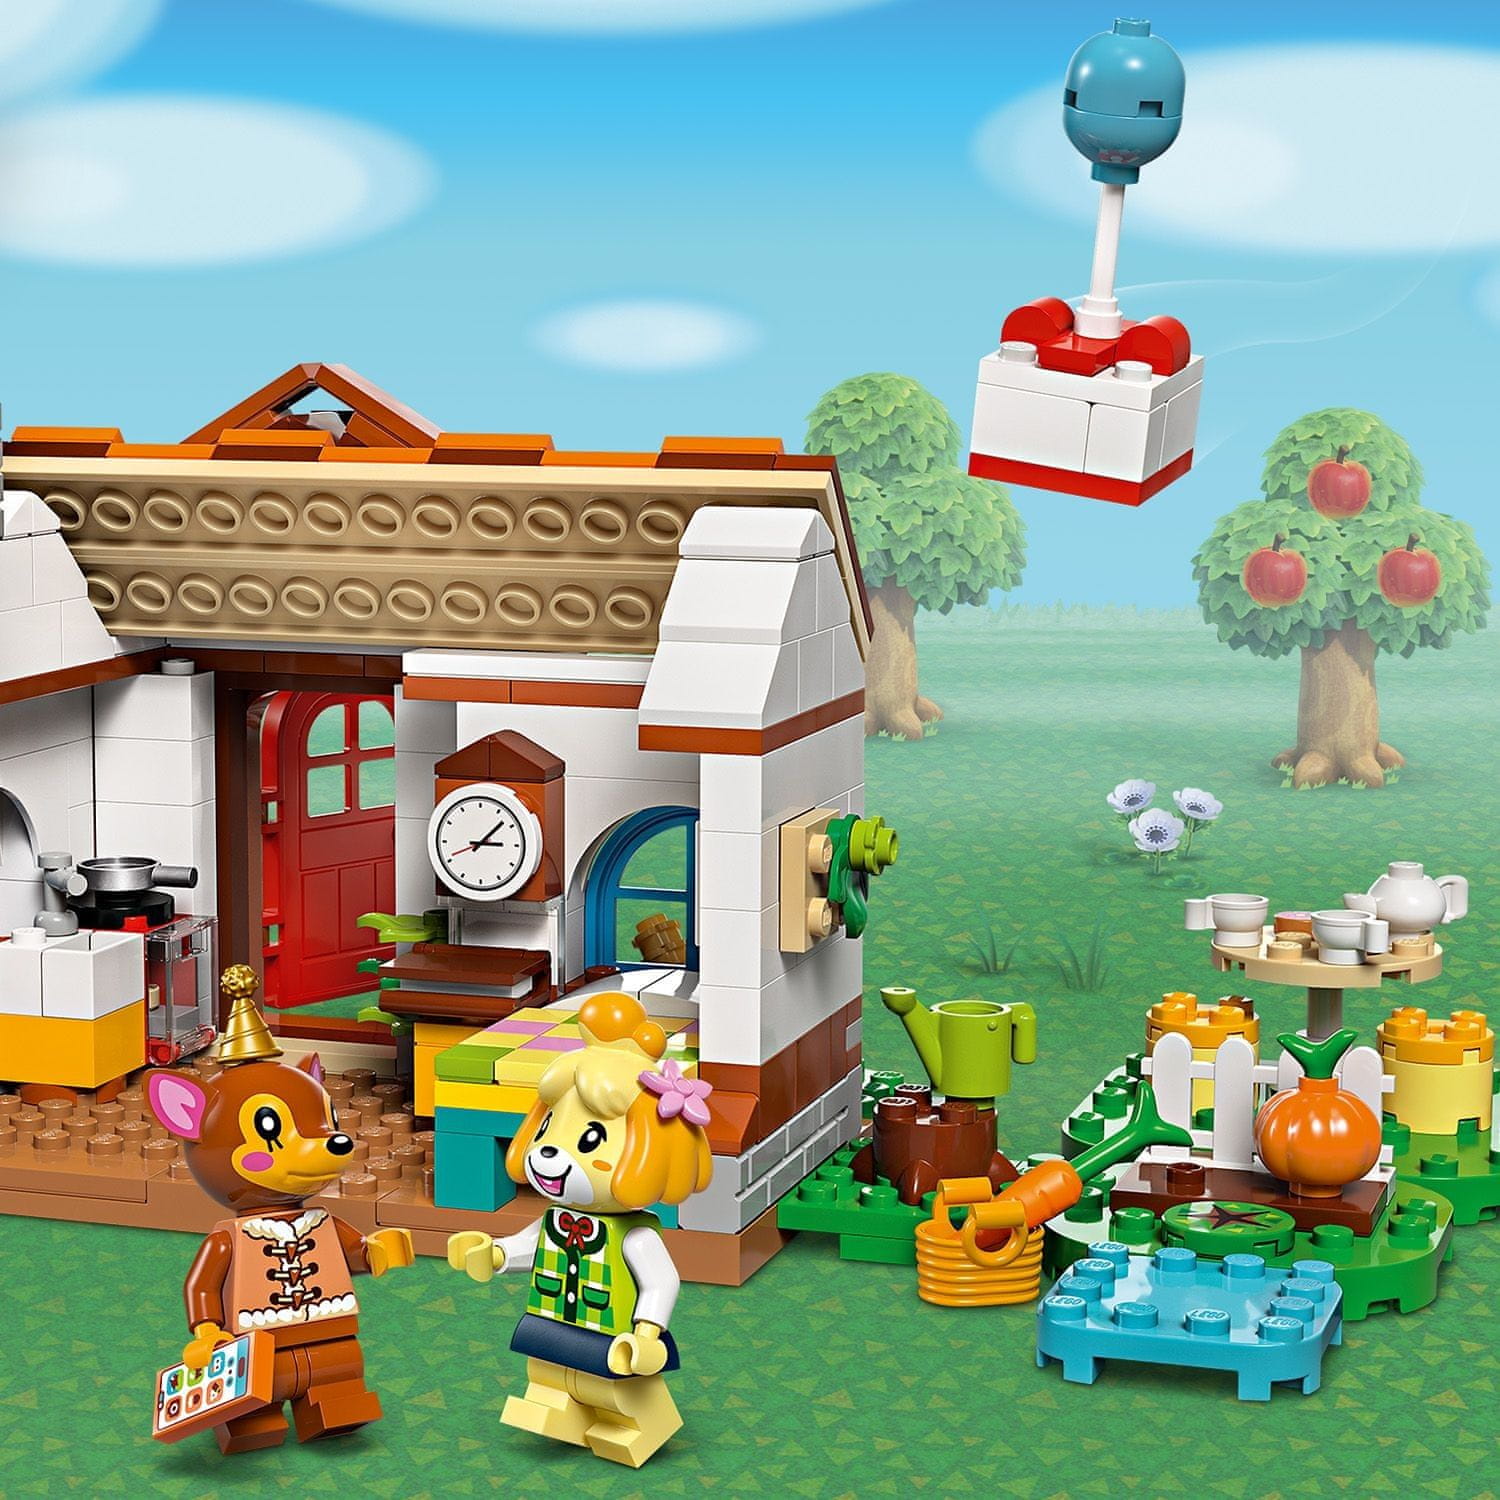 LEGO Animal Crossing 77049 Návštěva u Isabelle